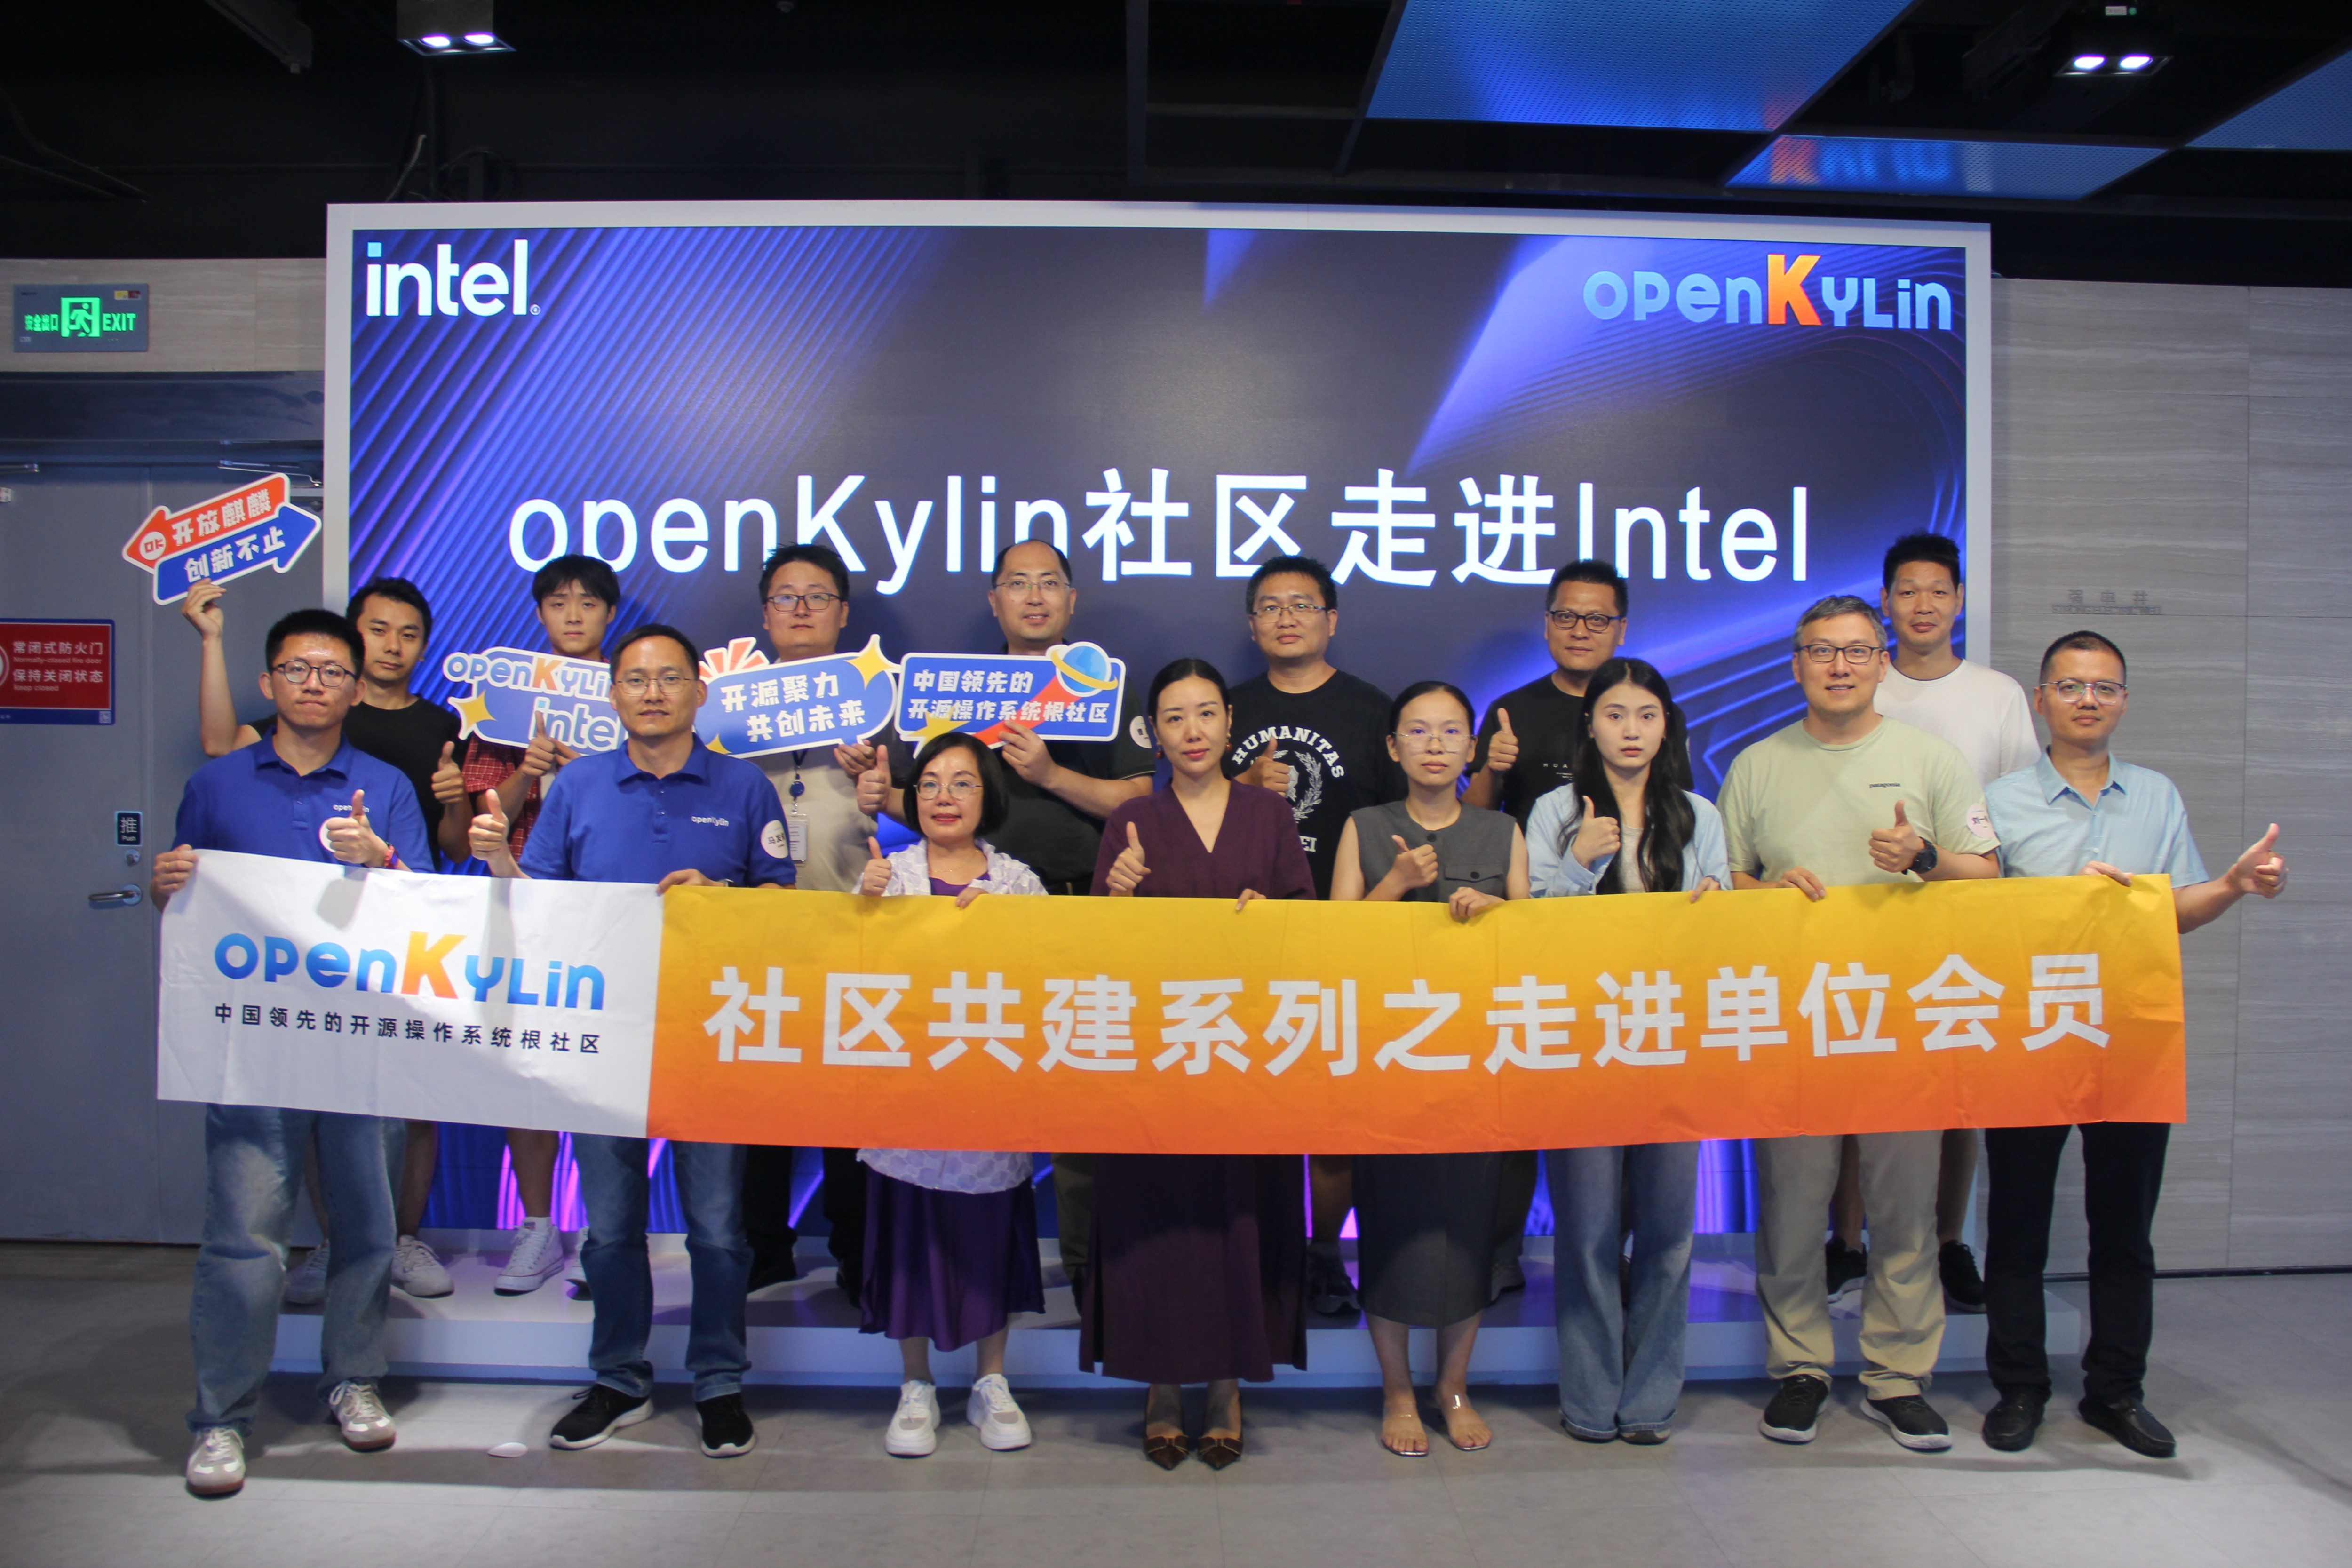 共建系列 - openKylin走进Intel交流活动成功举办